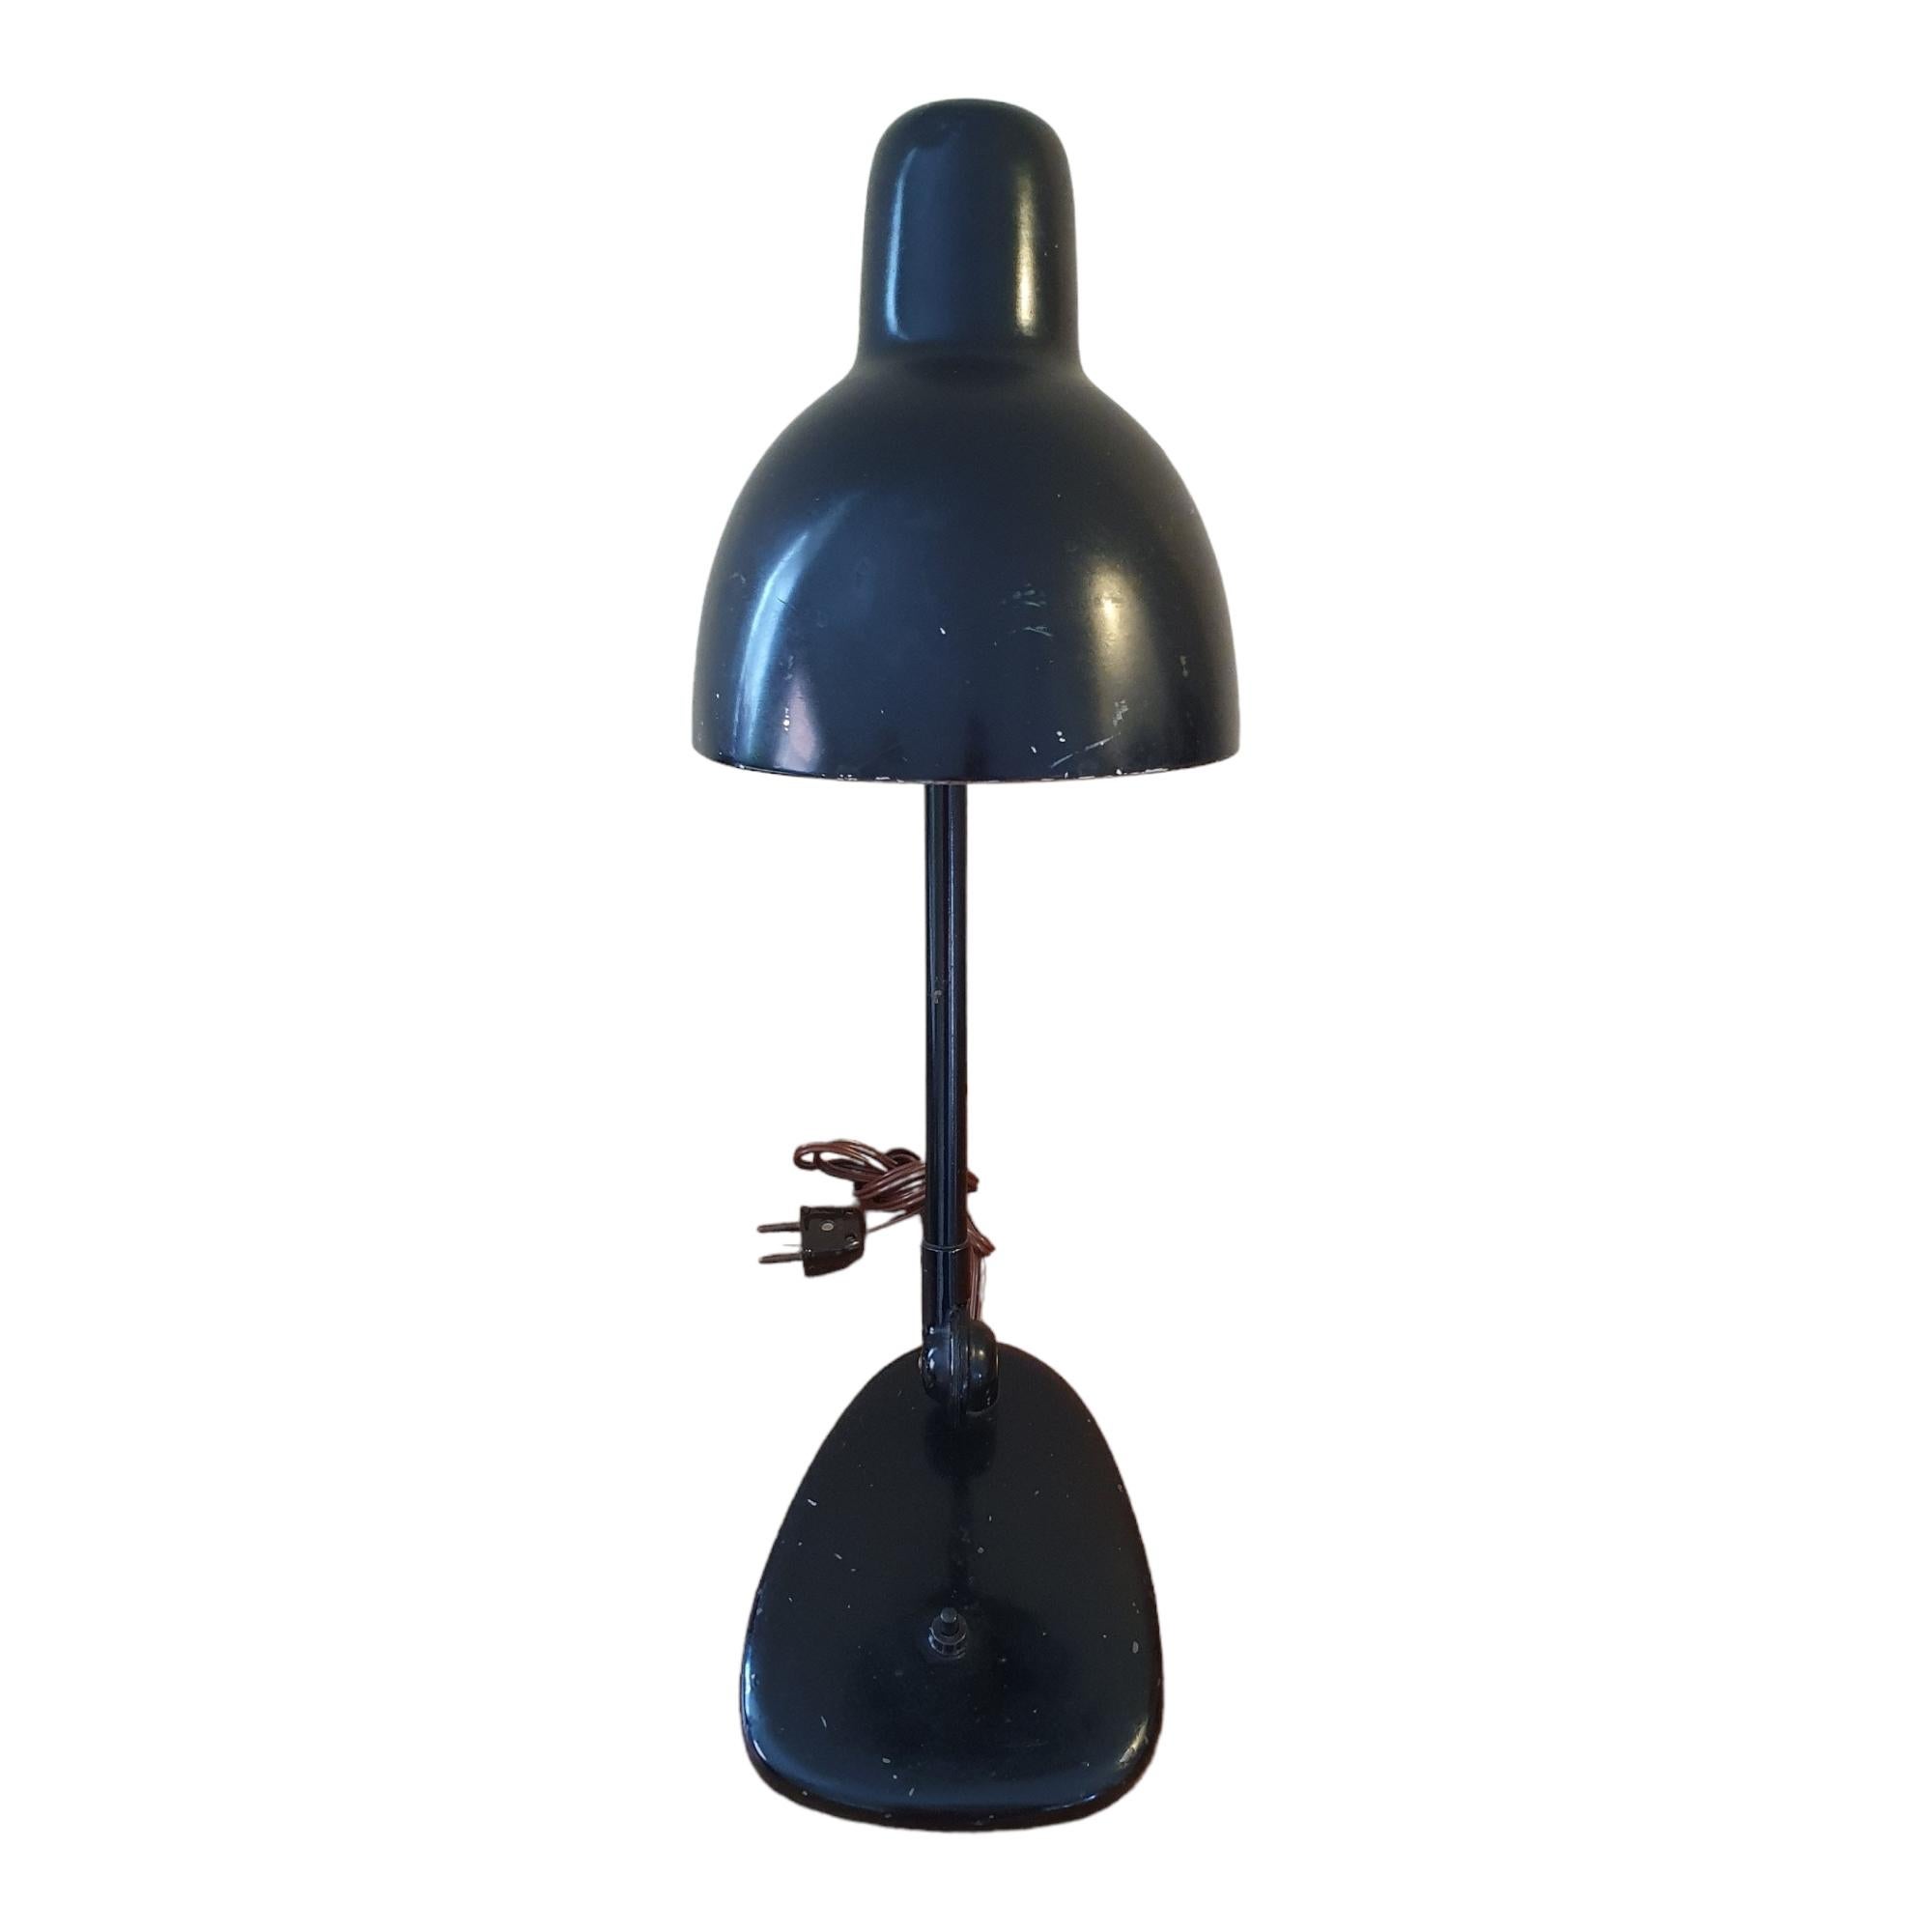 Magnifique lampe de bureau / lampe de table Bauhaus noire d'origine. Dans le style de Marianne Brandt, cette lampe est une merveilleuse représentation de l'aube du design moderne du milieu du siècle dernier, à la fois tournée vers le passé avec ses